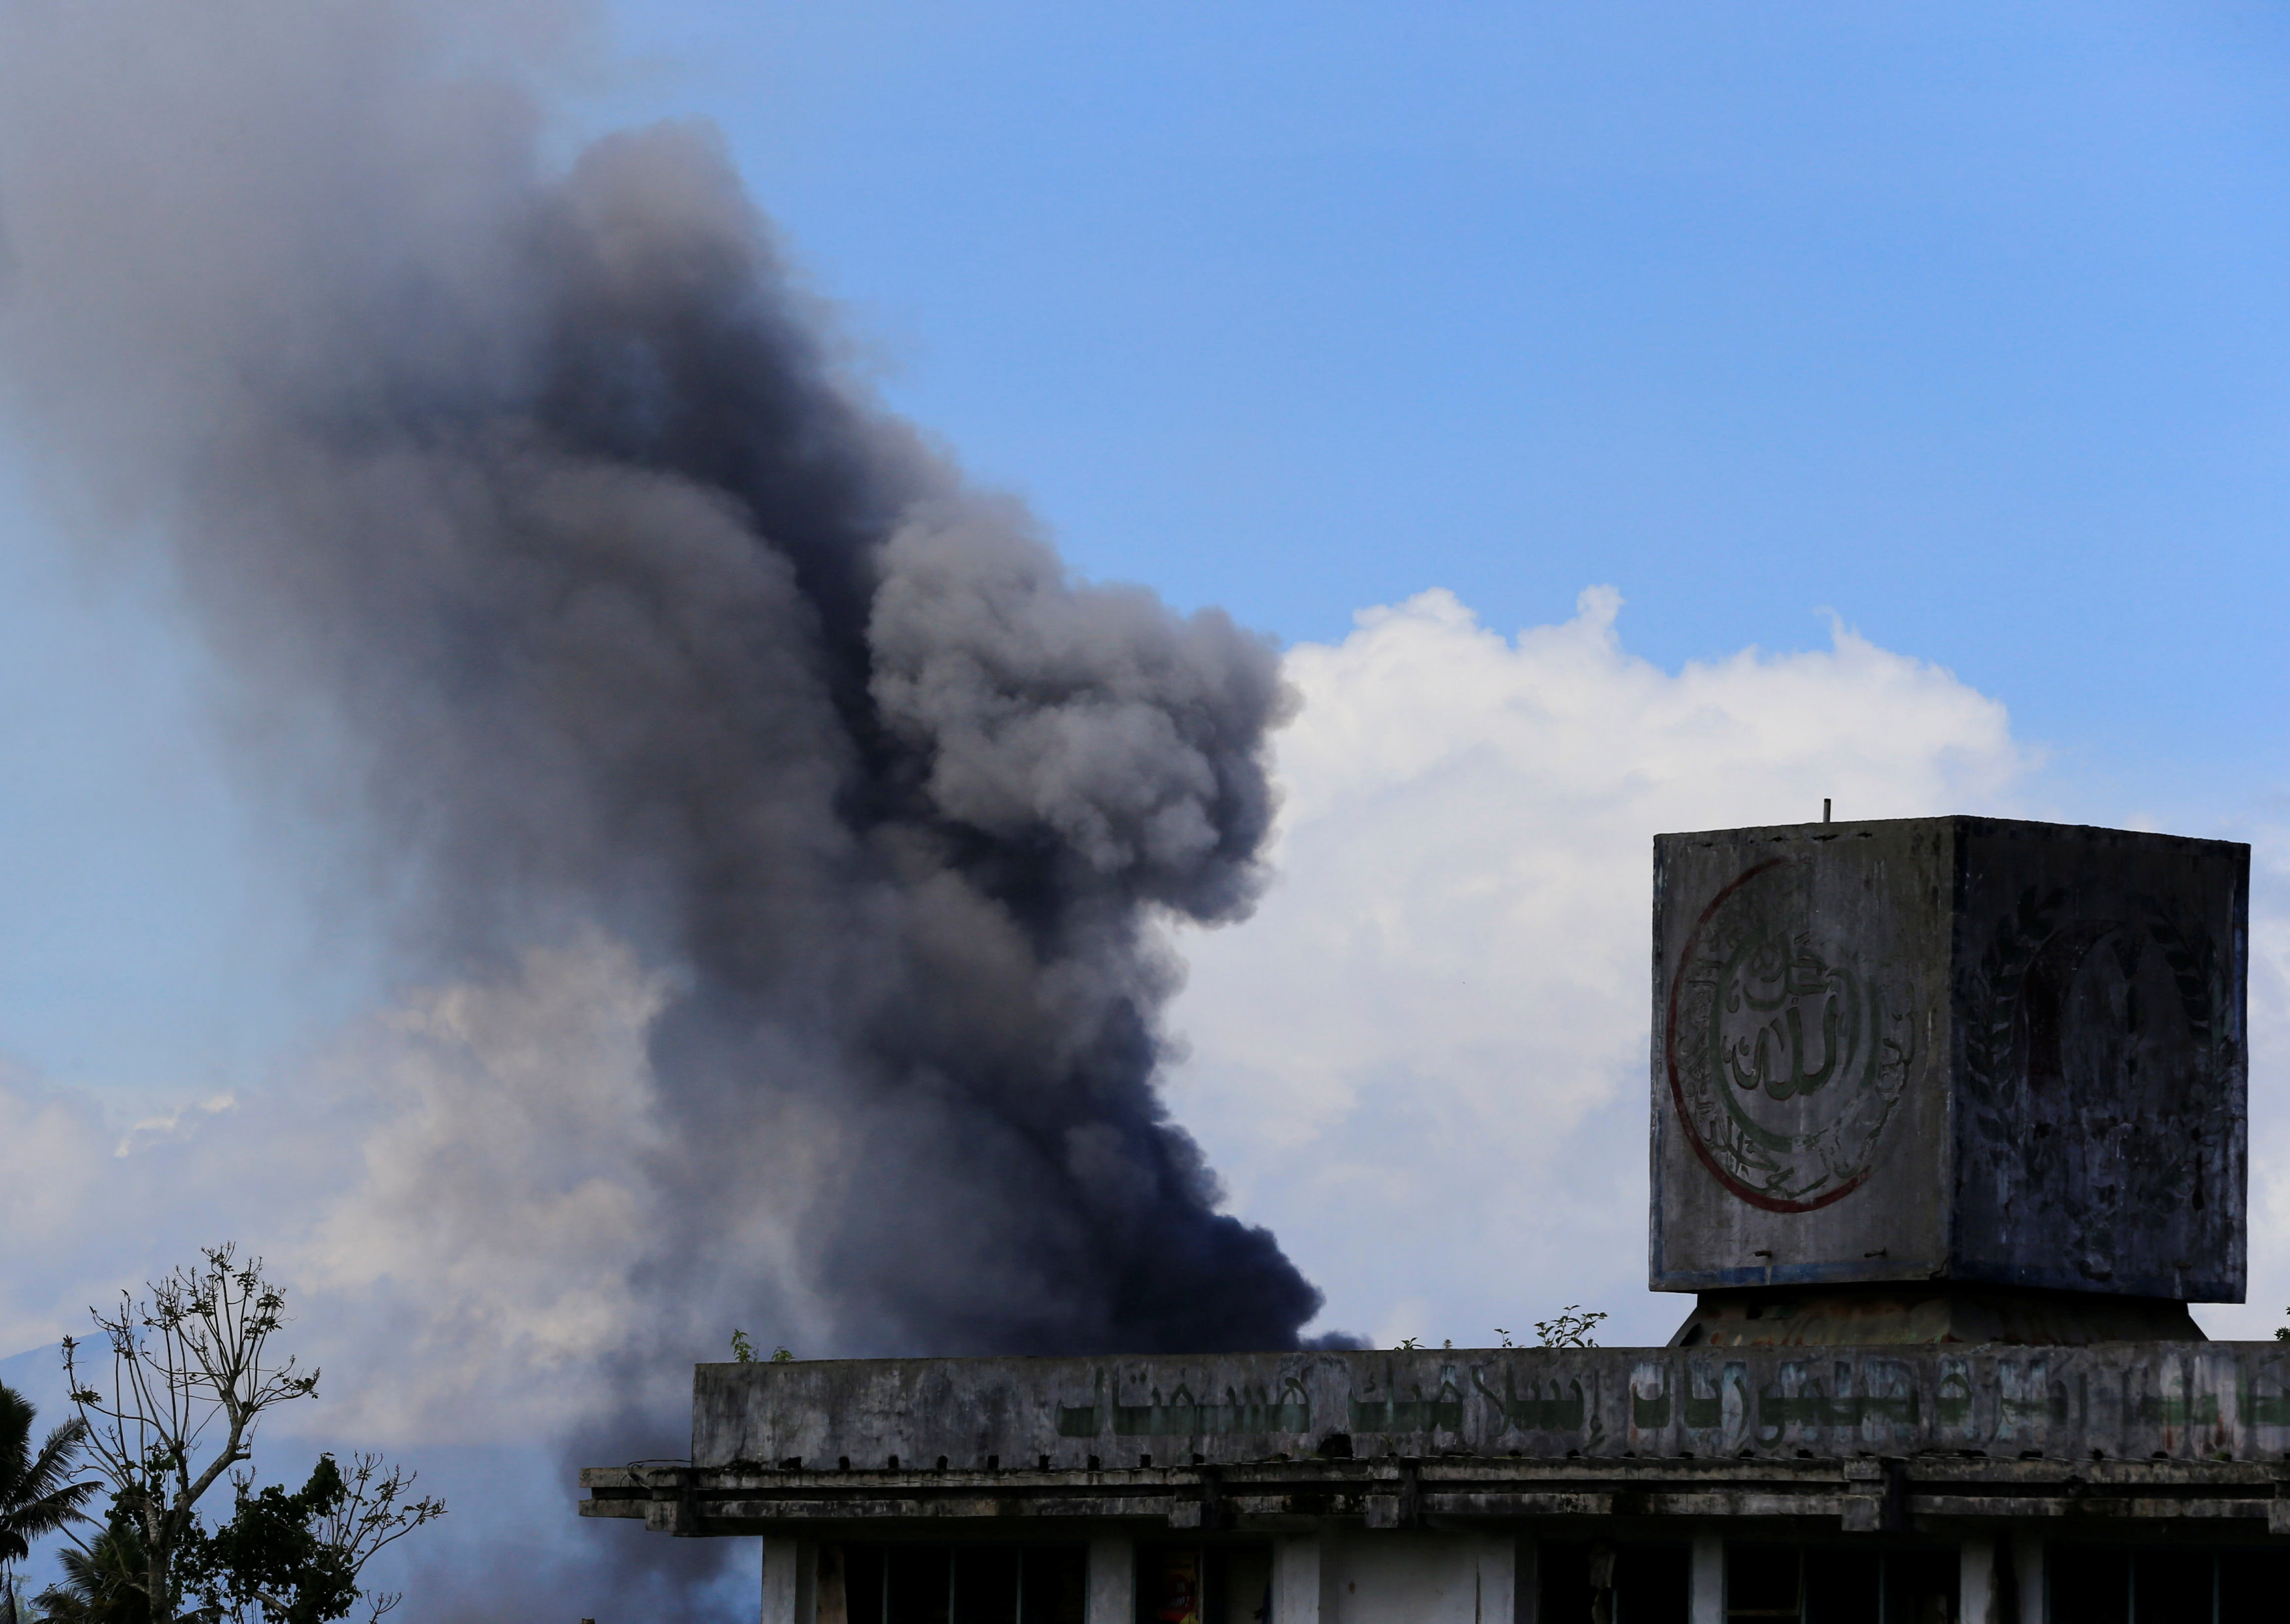 انبعاث الدخان بعد اشتباكات بين المتمردين وقوات الفلبين